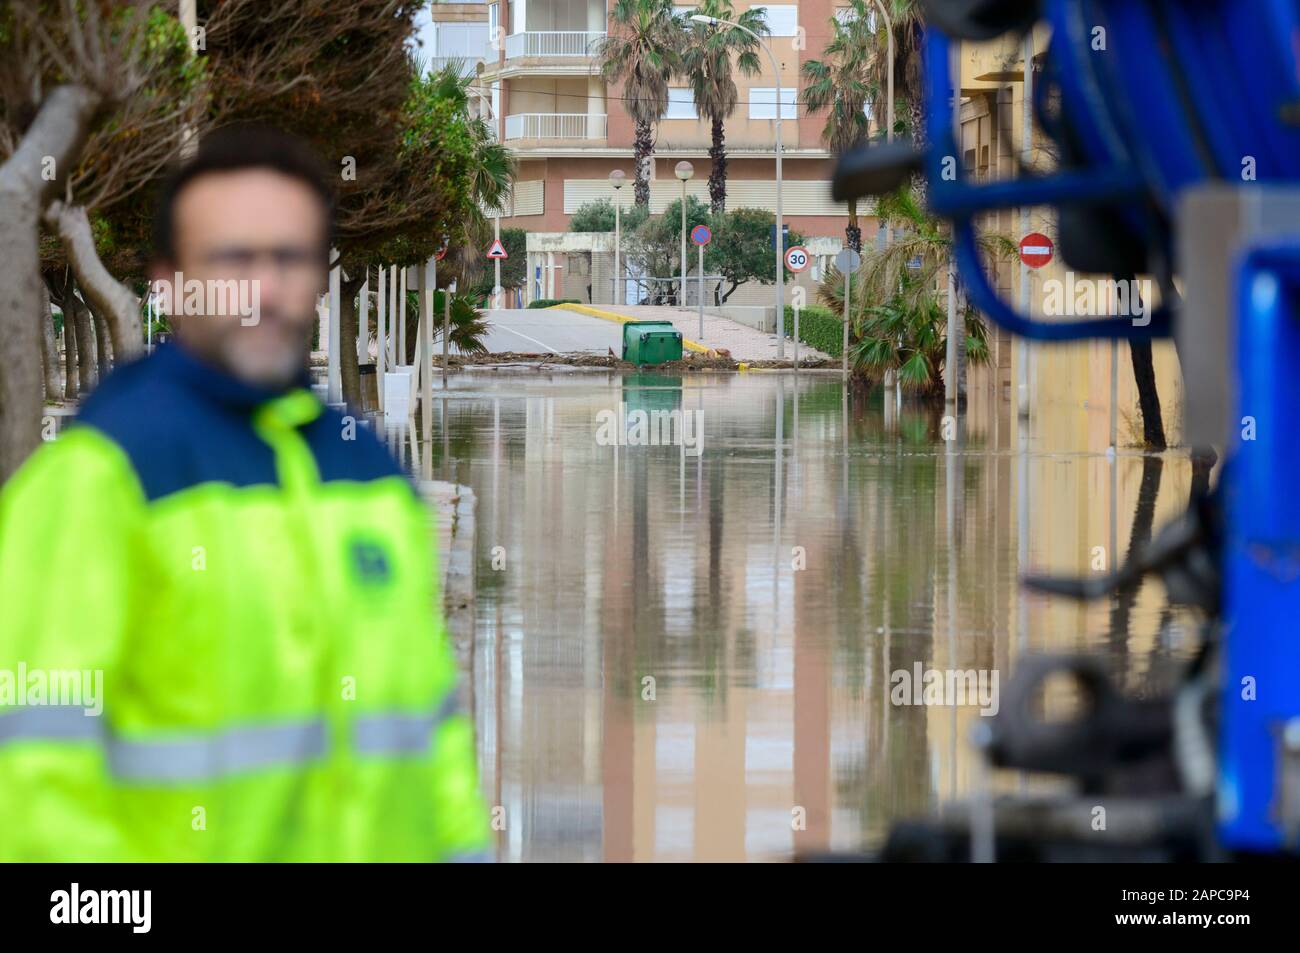 Tavernes de la Valldigna, Valencia, Spagna, 22 gennaio 2020. Le strade dell'urbanizzazione sembrano essere fiumi a causa dell'inondazione di acqua di mare. Credit: Salva Garrigues)/ Alamy Live News Foto Stock